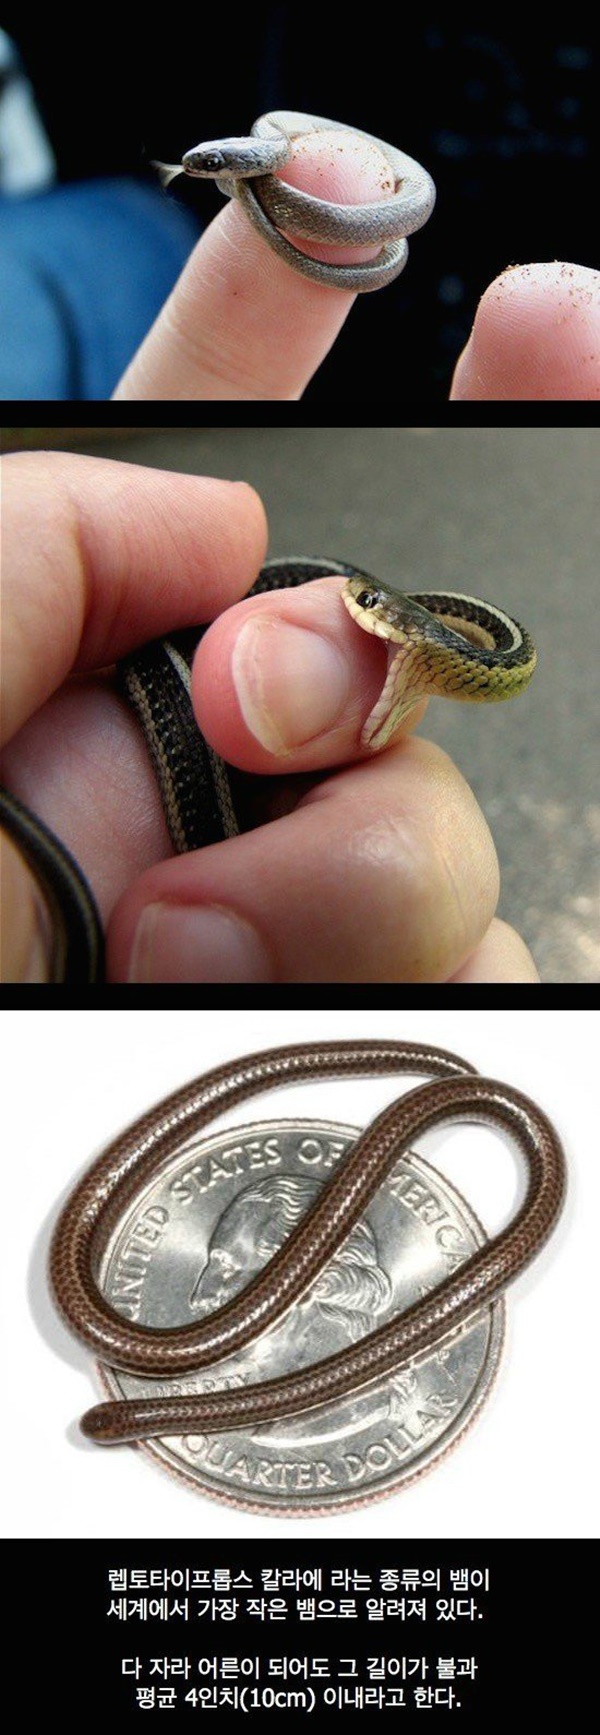 정말 작은 뱀